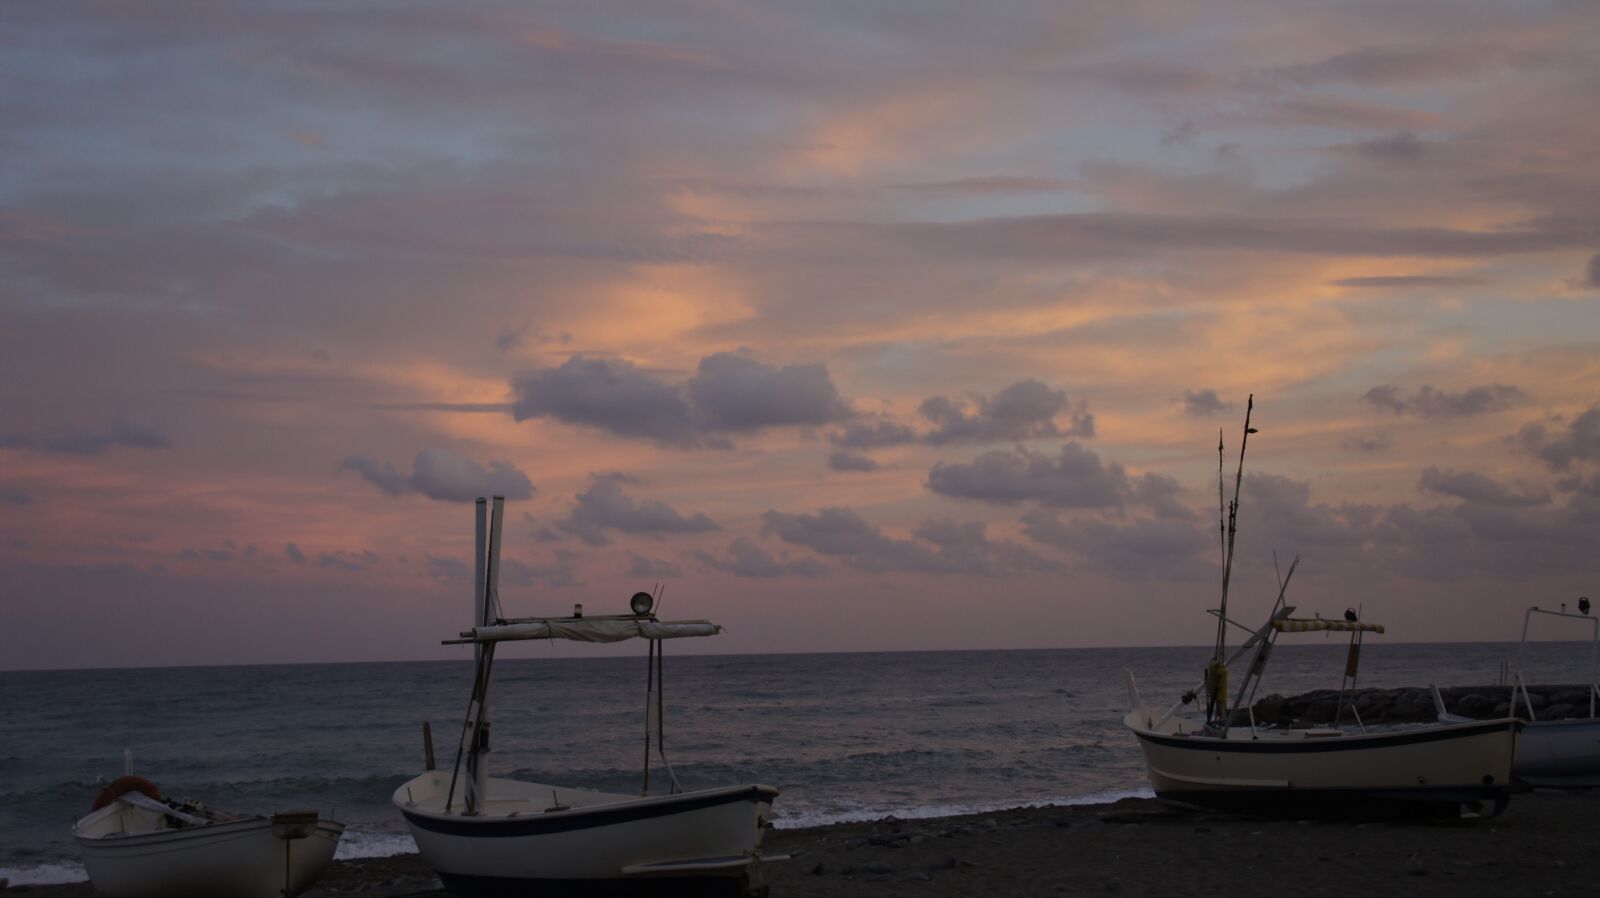 Sony Alpha NEX-5 + Sony E 18-200mm F3.5-6.3 OSS sample photo. Sunset, sea, boats photography